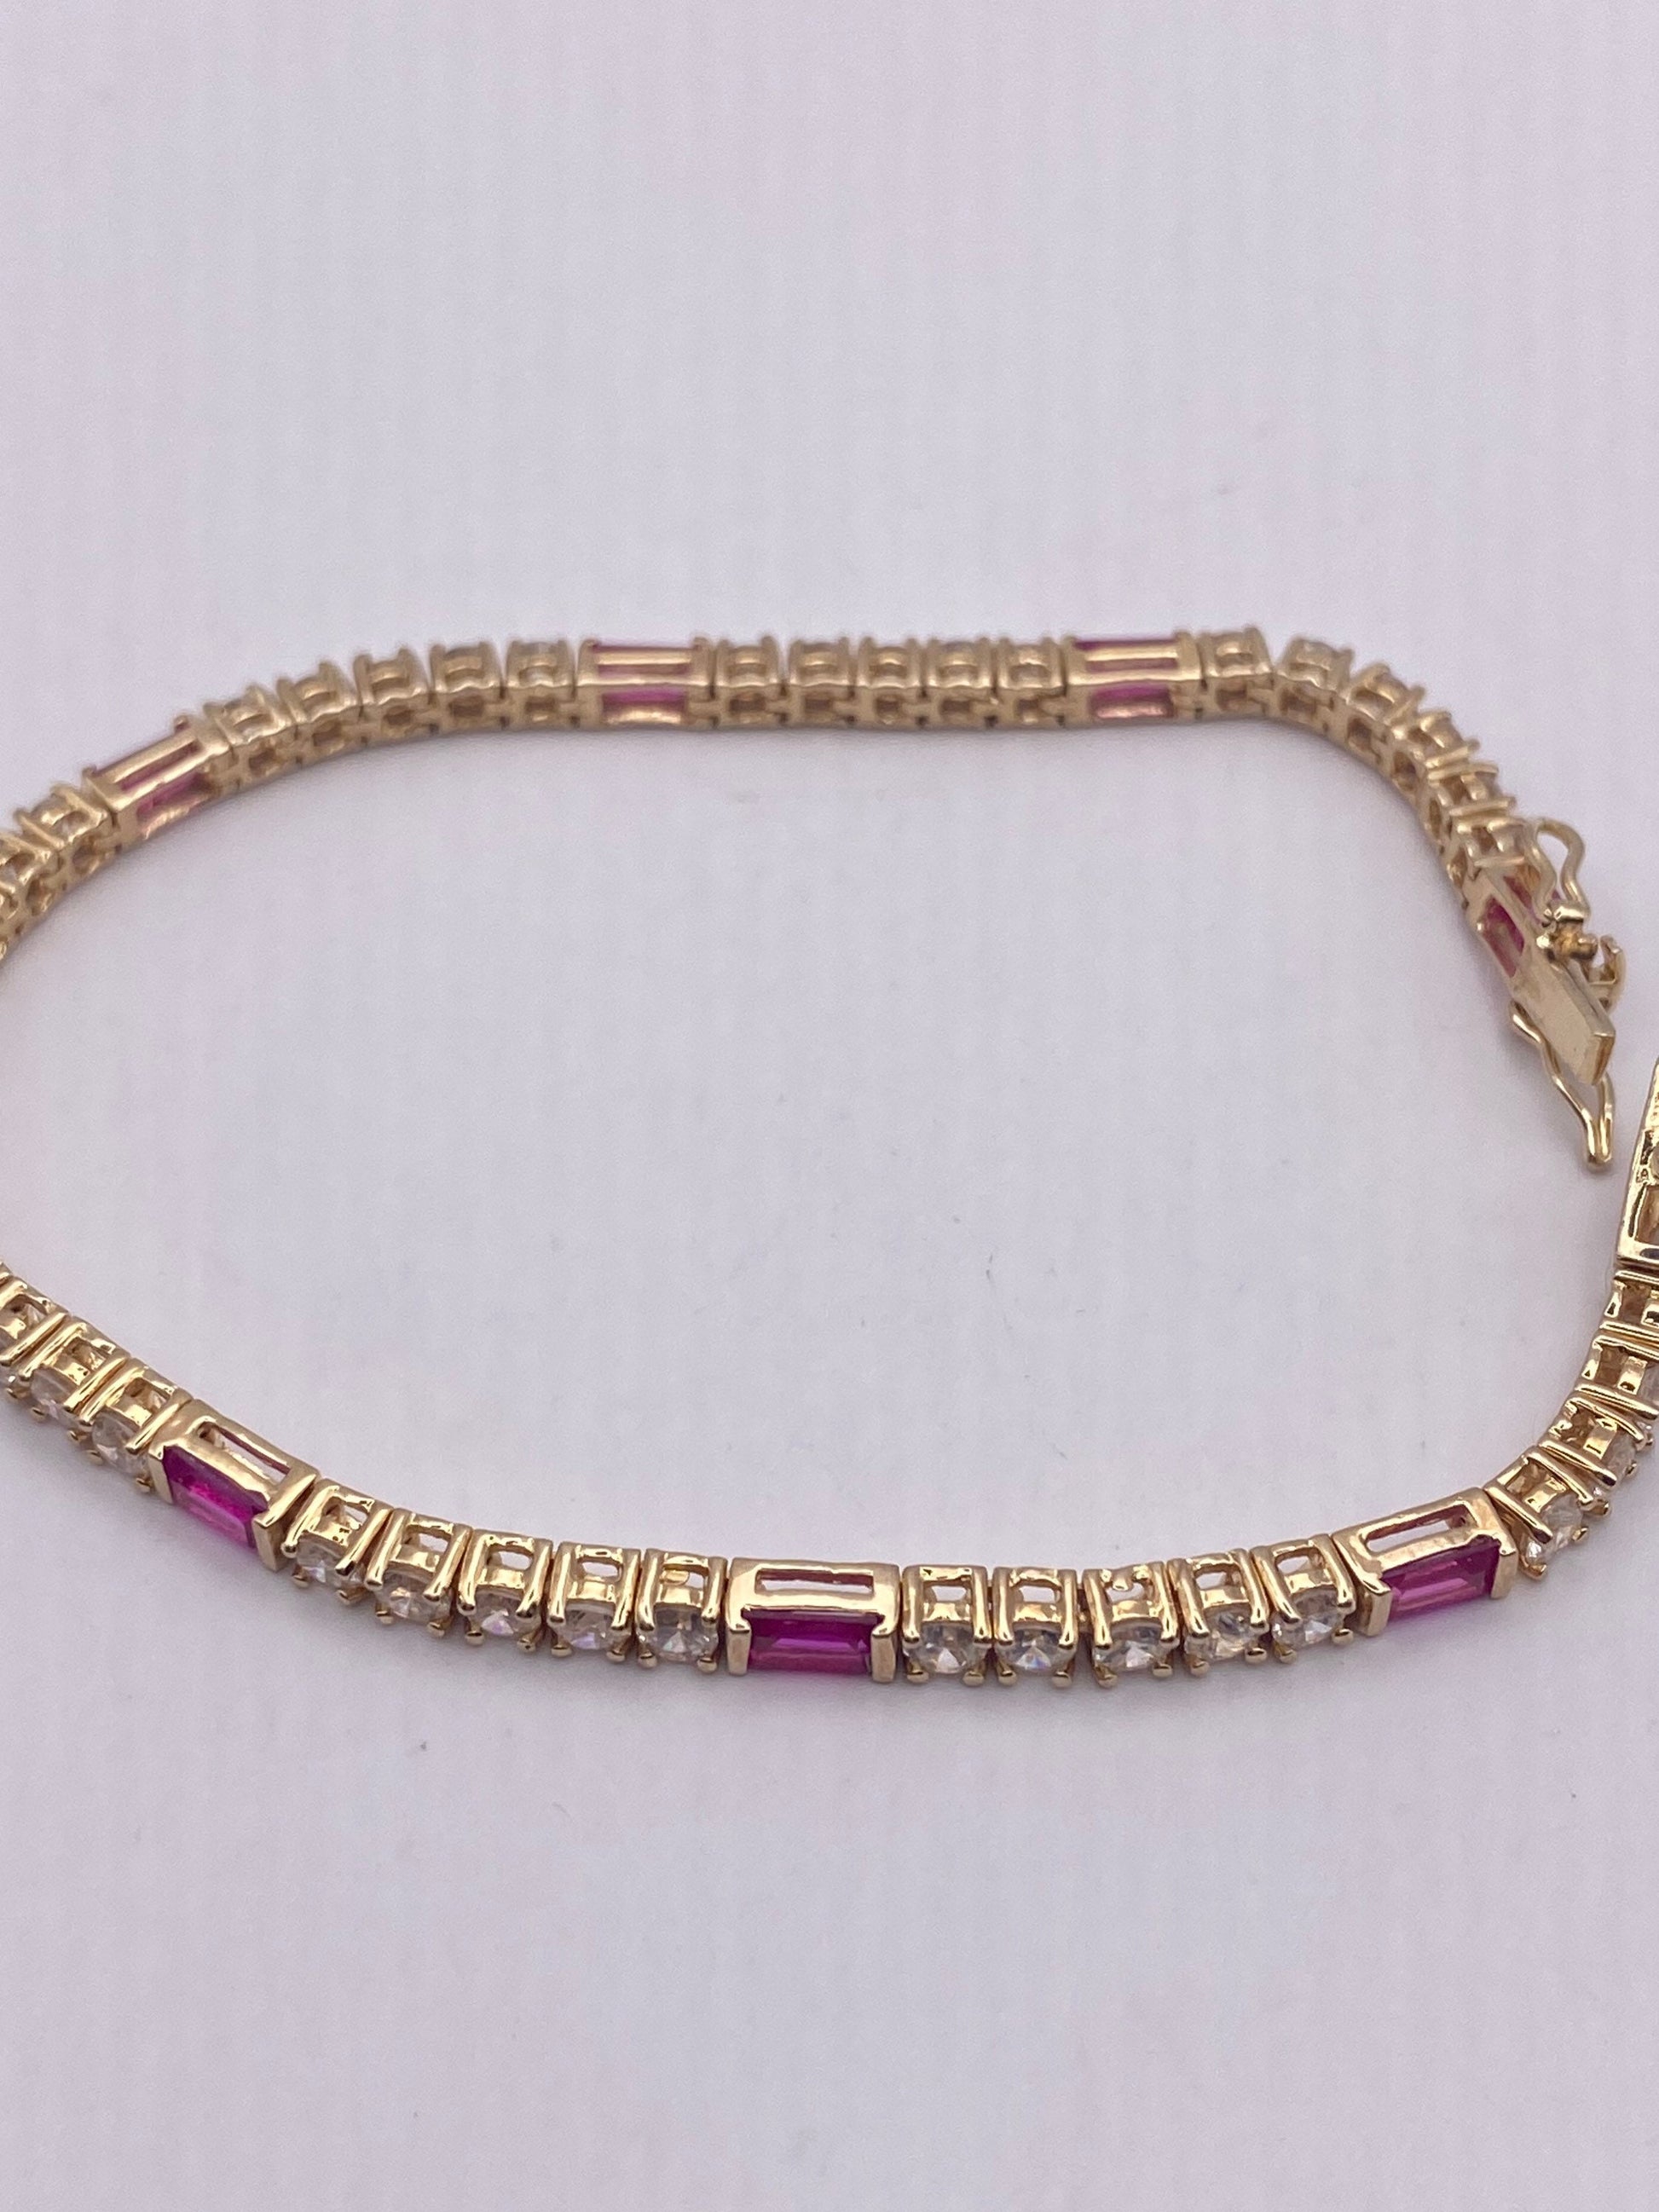 Vintage Clear and Pink Crystal Golden 925 Sterling Silver Tennis Bracelet